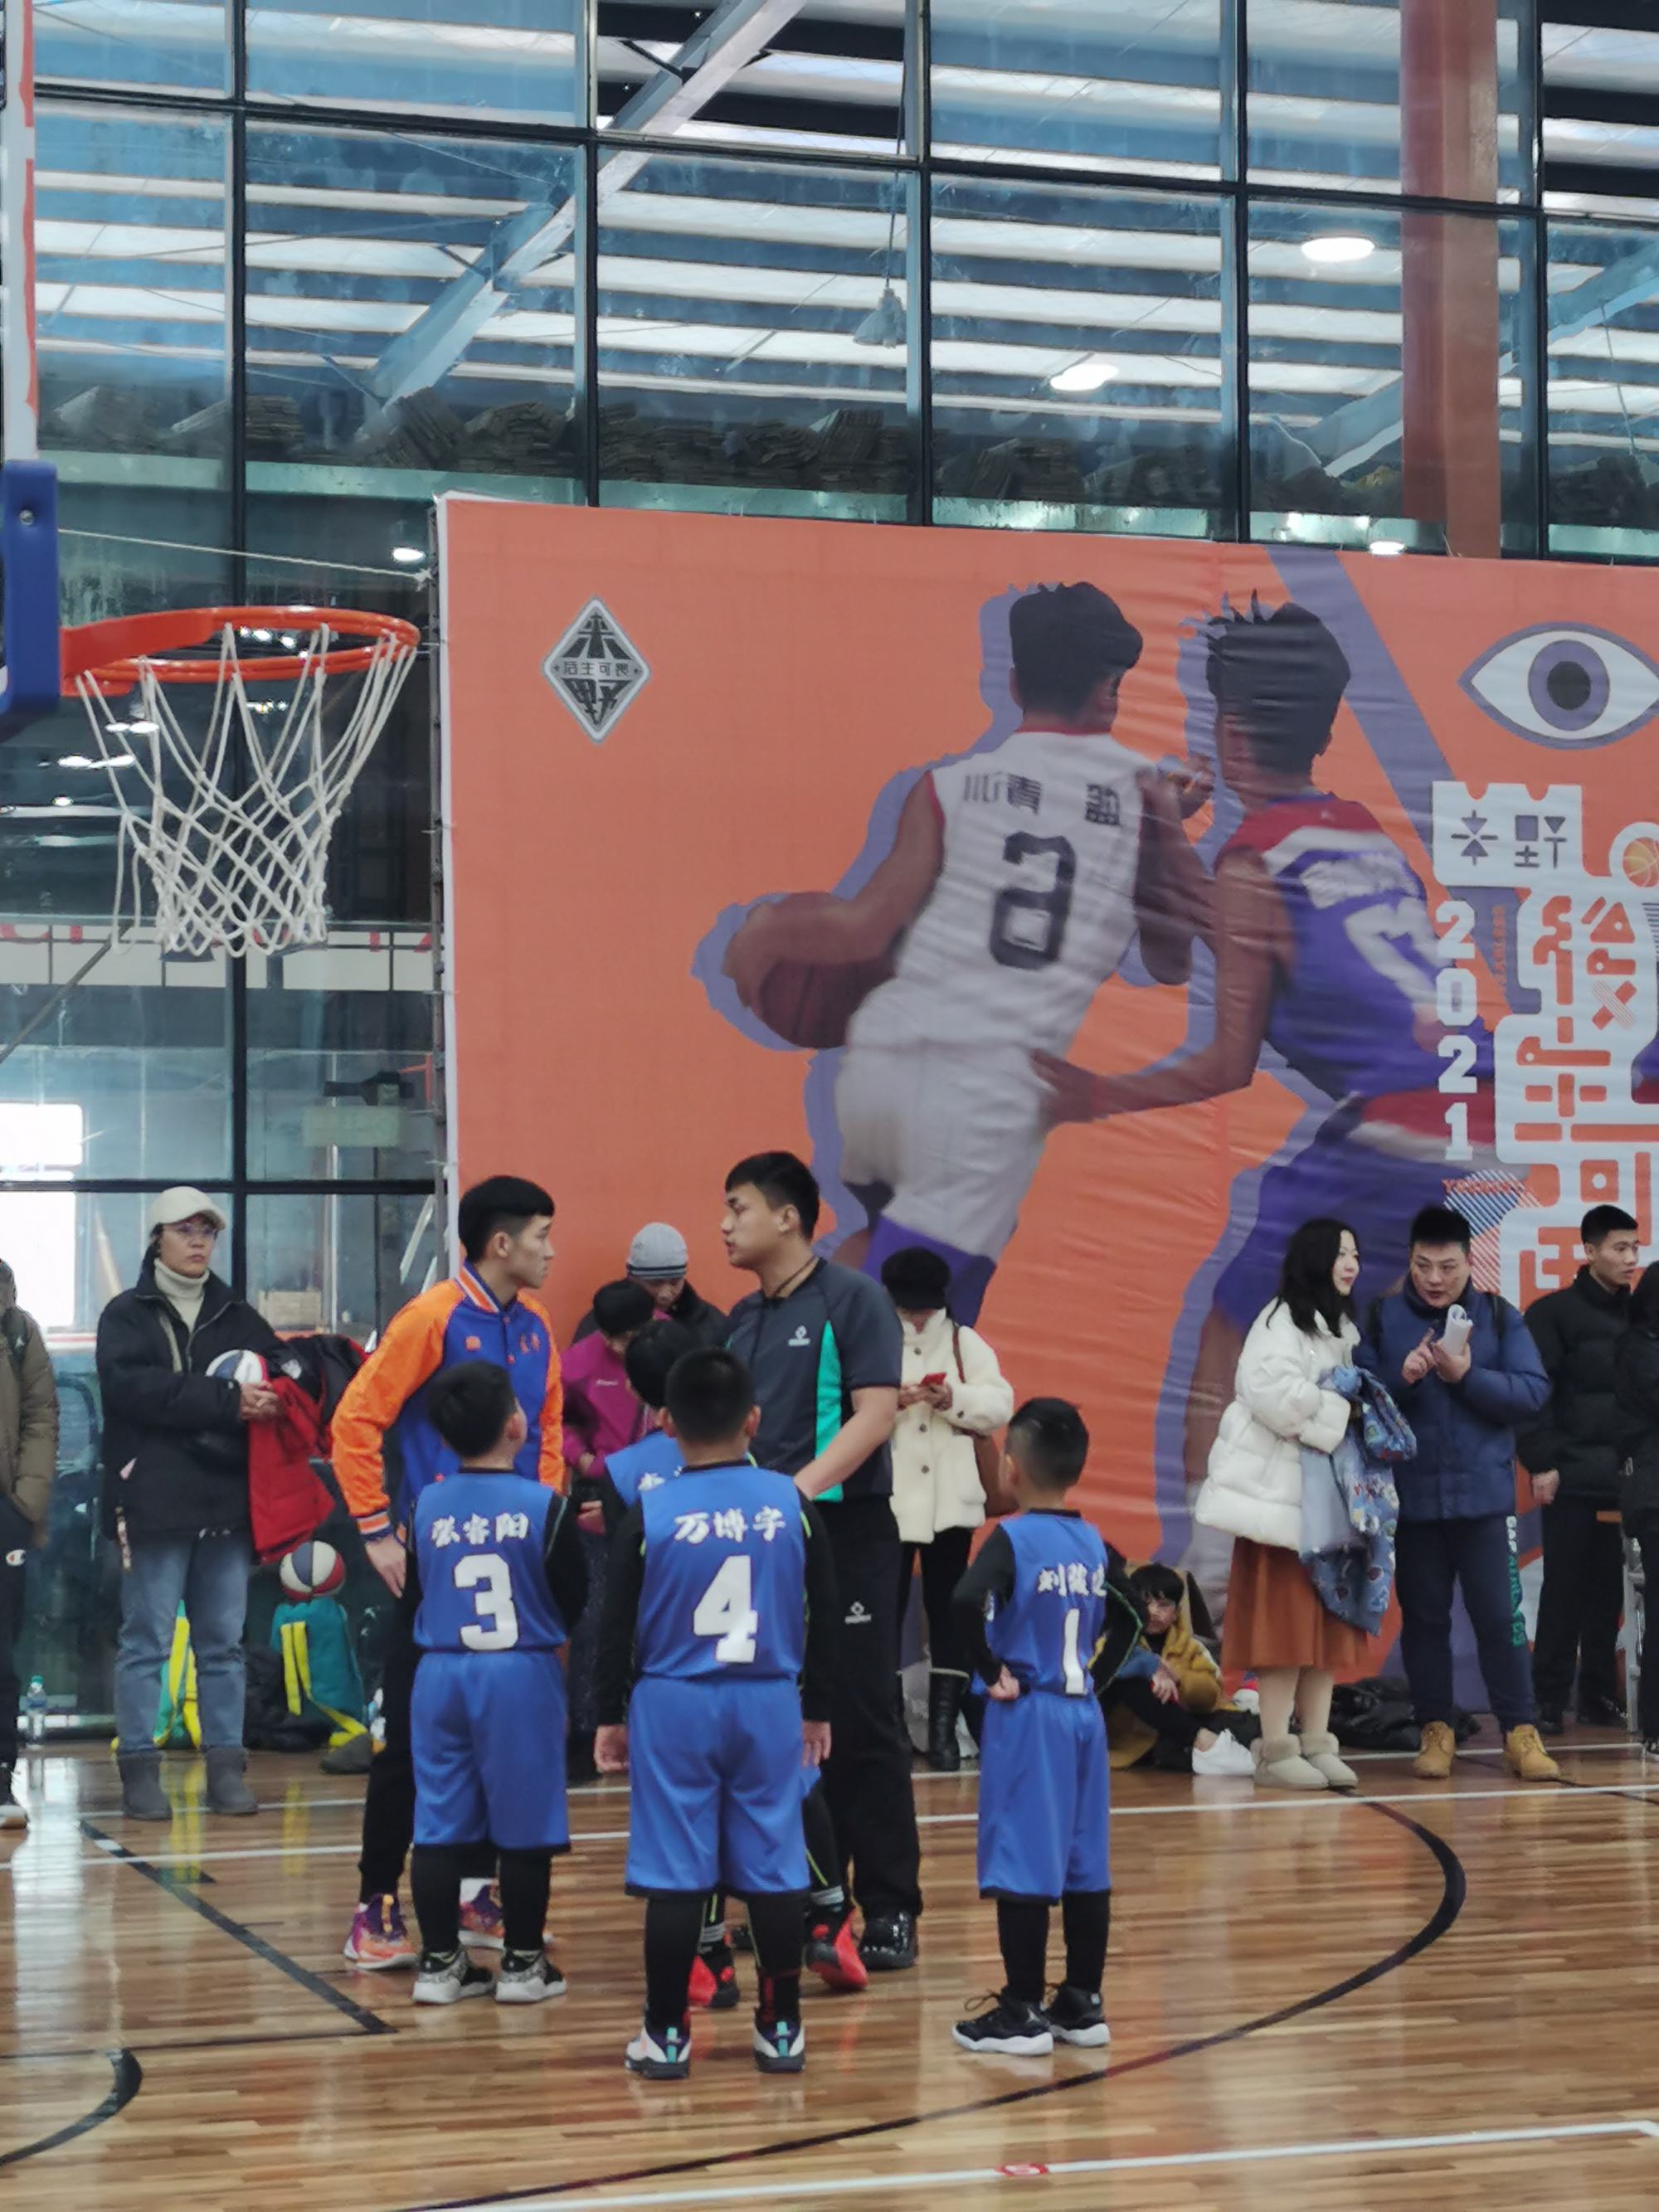 

腾讯体育突然宣布与国际篮联中国区独家数字媒体版权格局改变